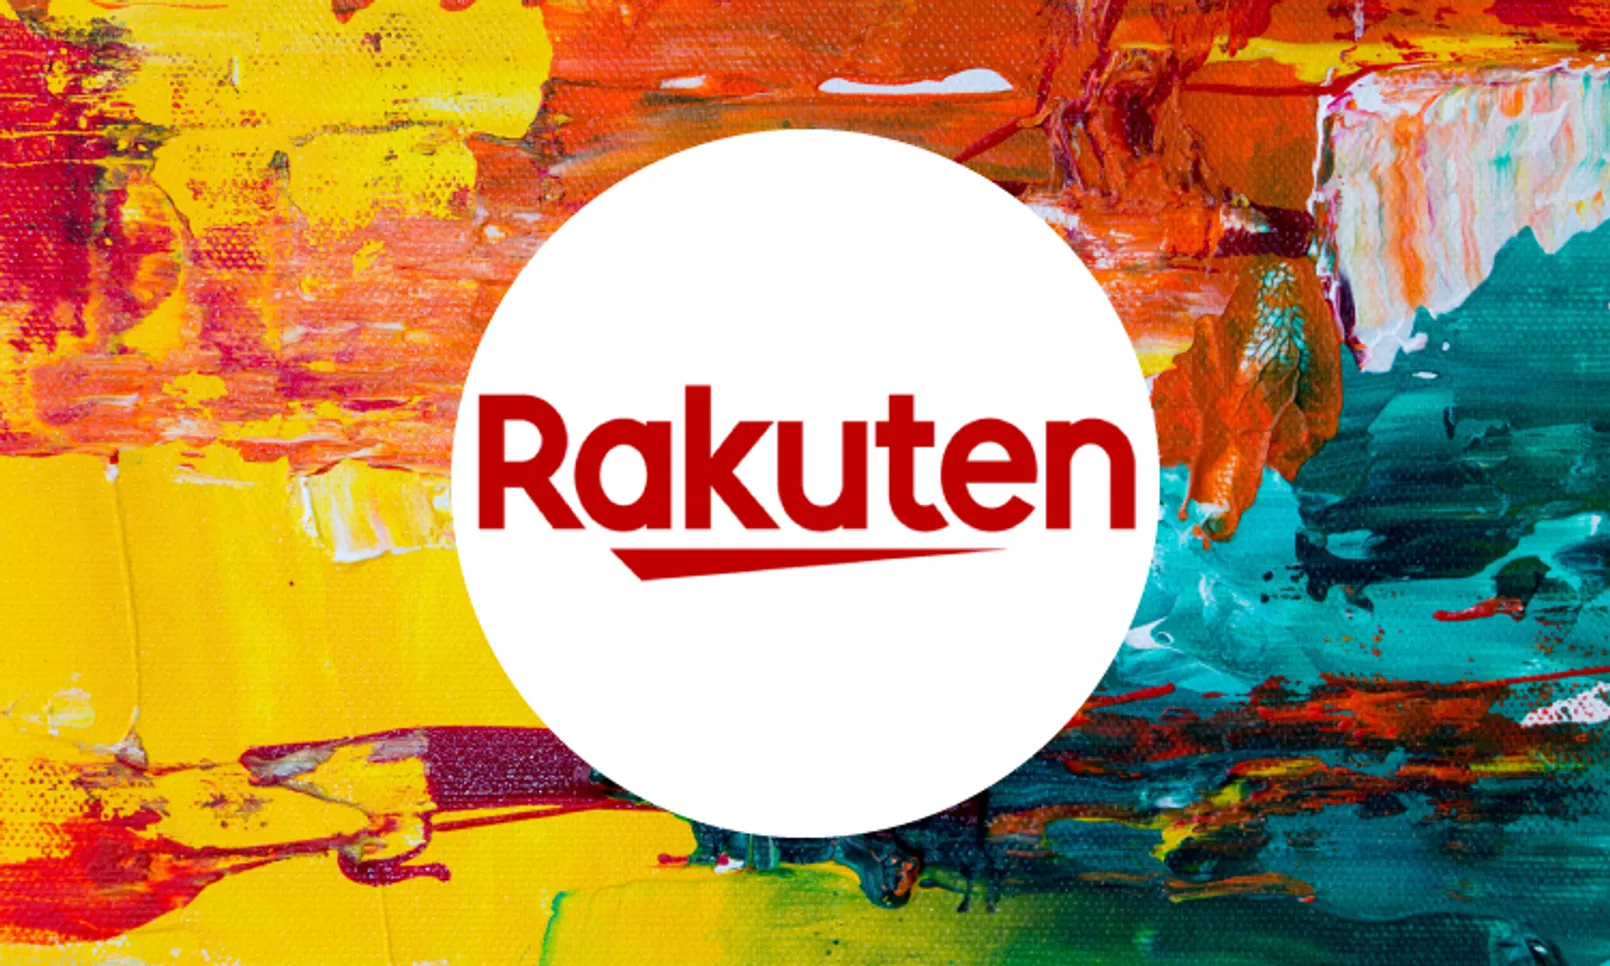 Rakuten Launched Its Nft Marketplace.png